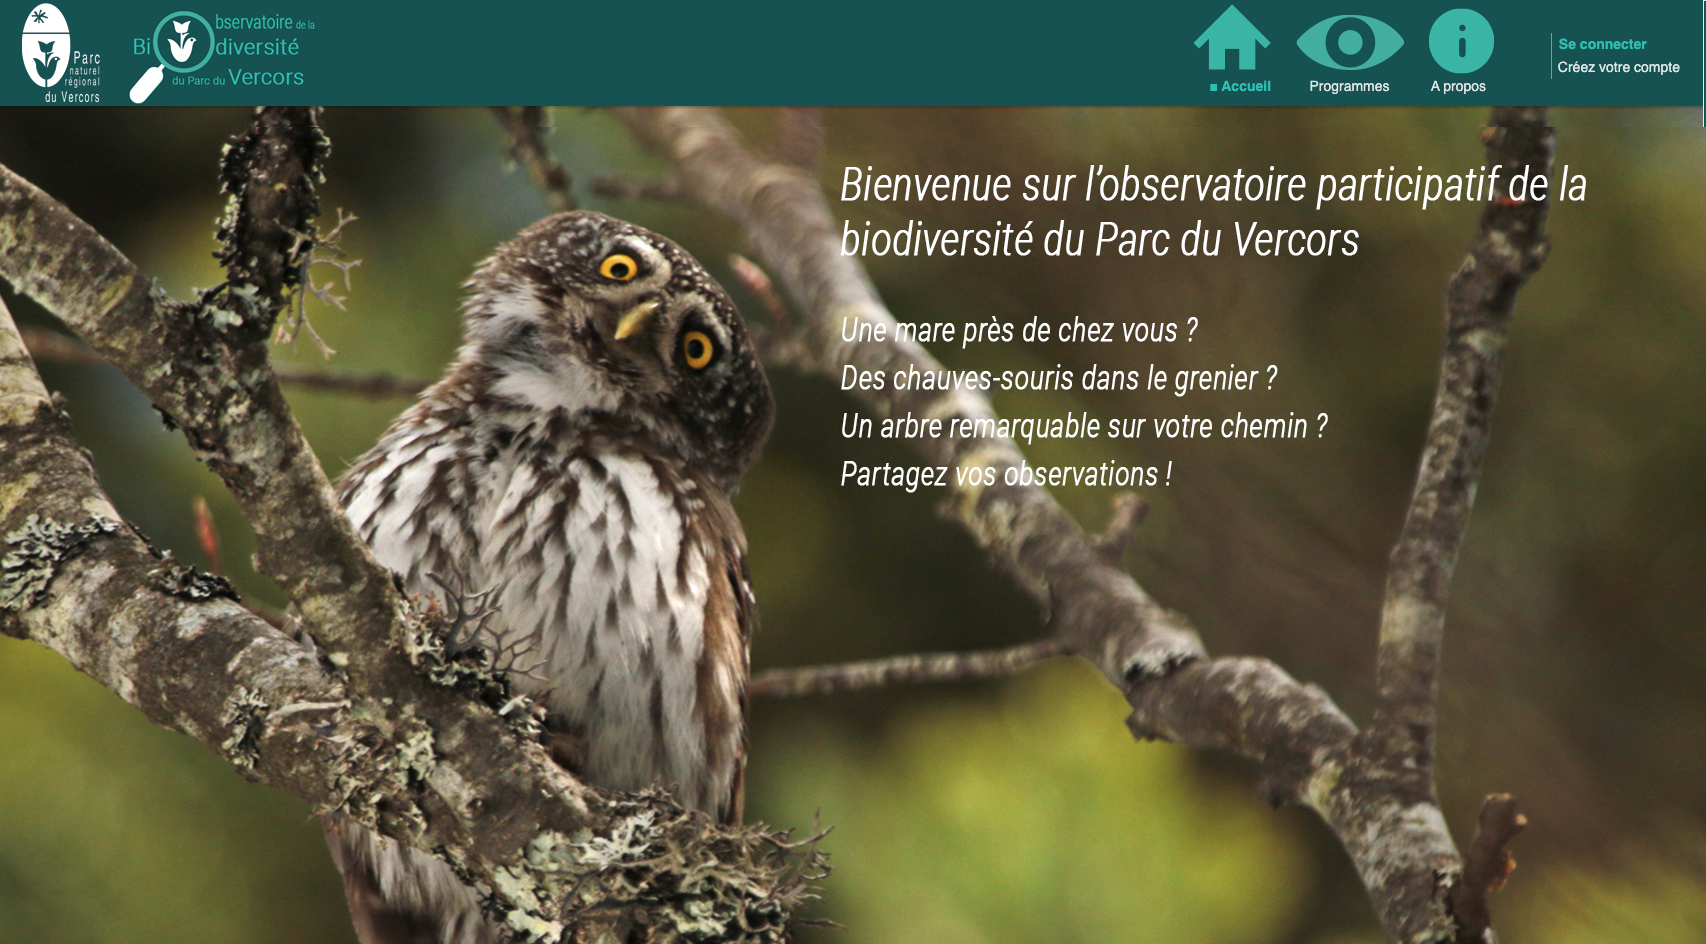 https://observatoire-biodiversite.parc-du-vercors.fr/fr/home